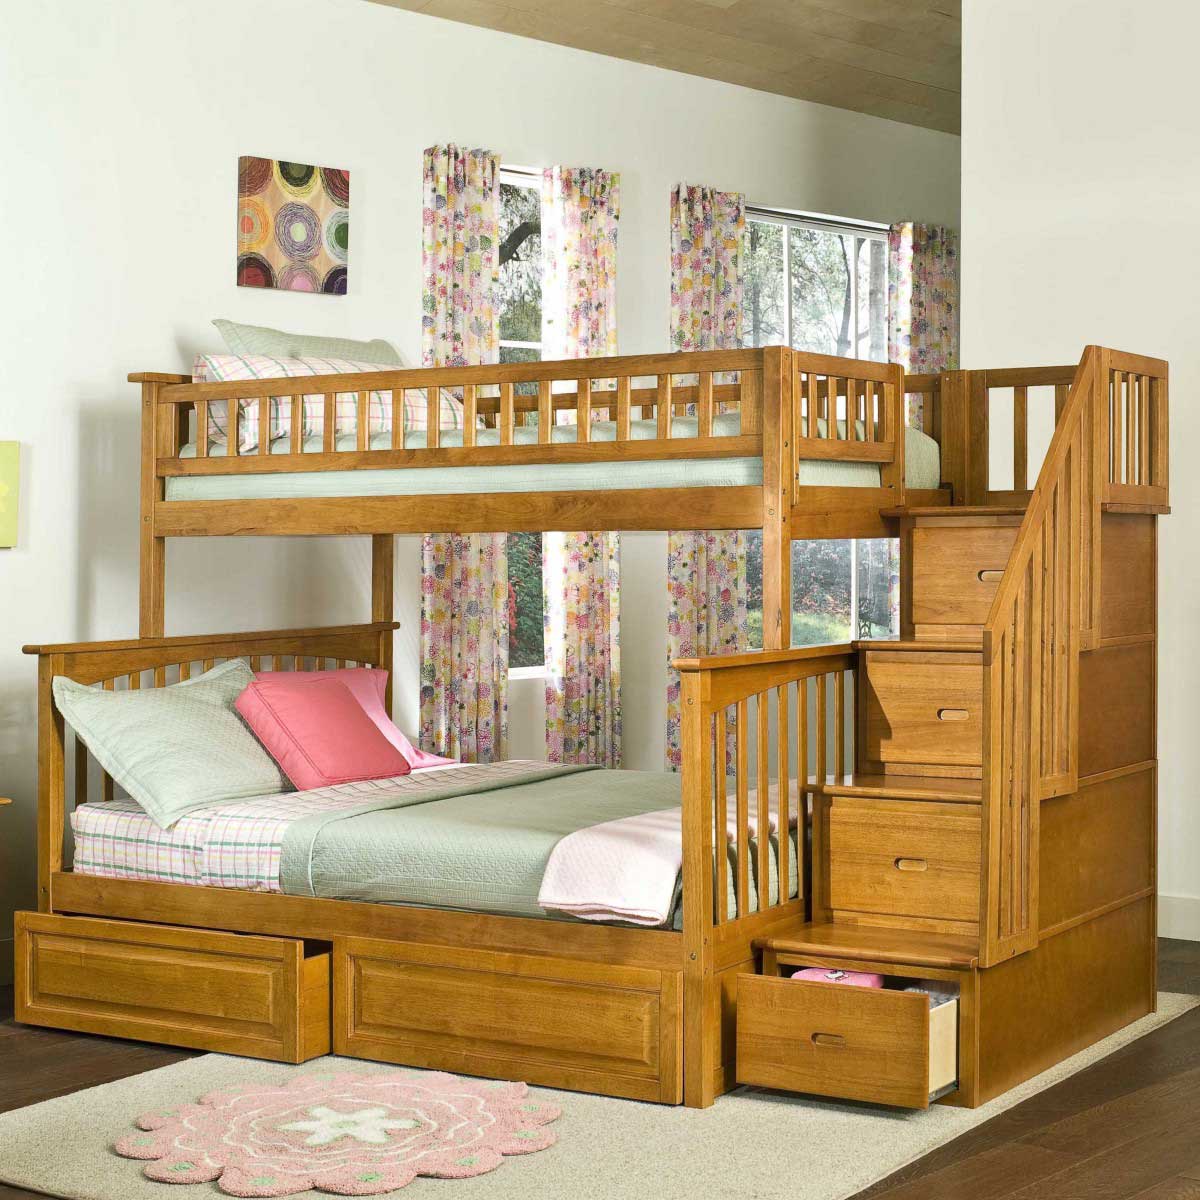 Детские комнаты с двухъярусной кроватью